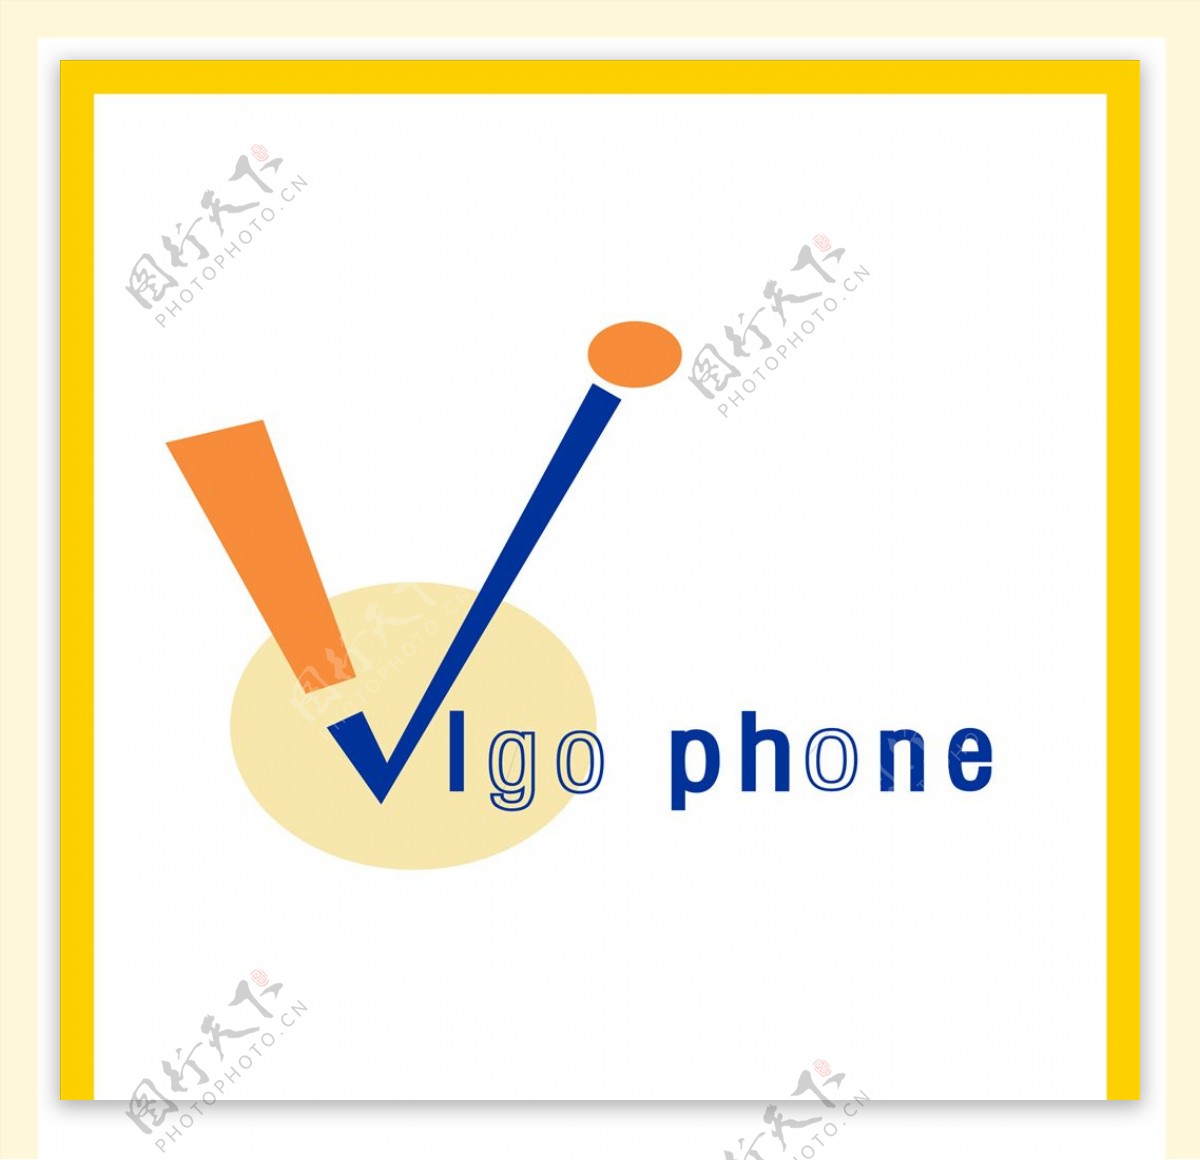 Vigo手机